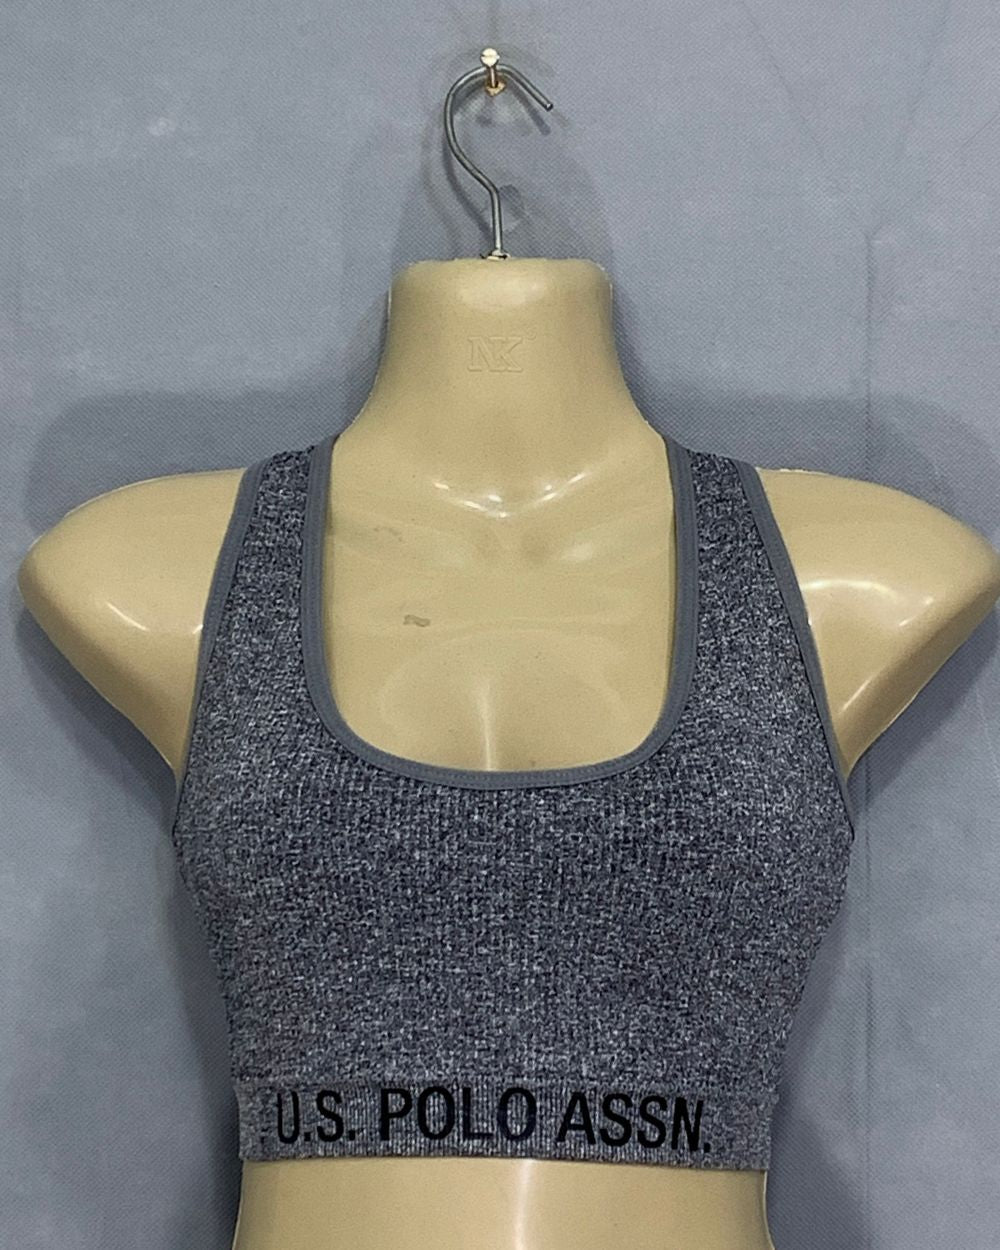 Polo U.S Assn Branded Original Sports Gym Bra For Women